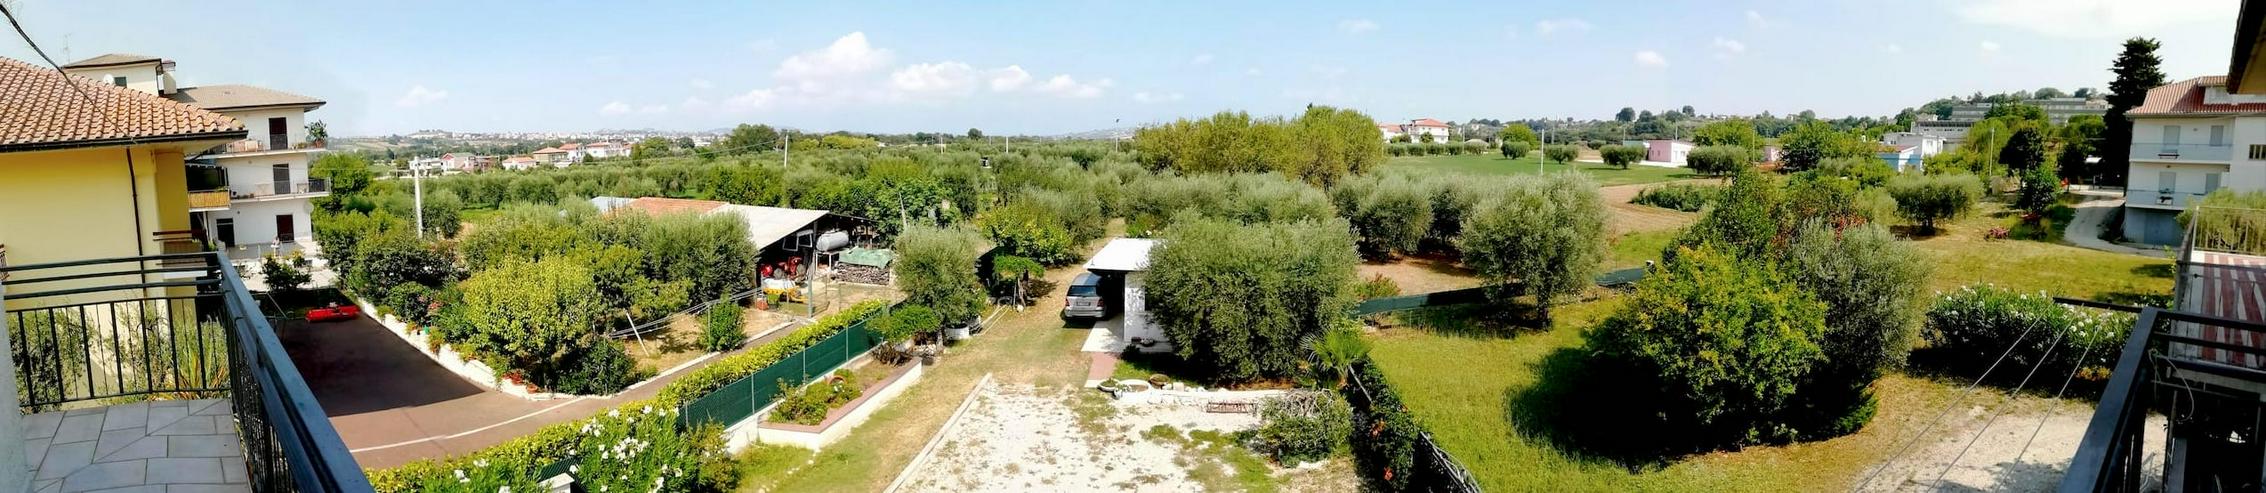 Bild 7: Große voll renovierte und vollmöbilierte Haushälfte mit 1600m² Grundstück in voller Natur zwischen Olivenbäumen, sanften Hügel und Meer. Italien, Abruzzen